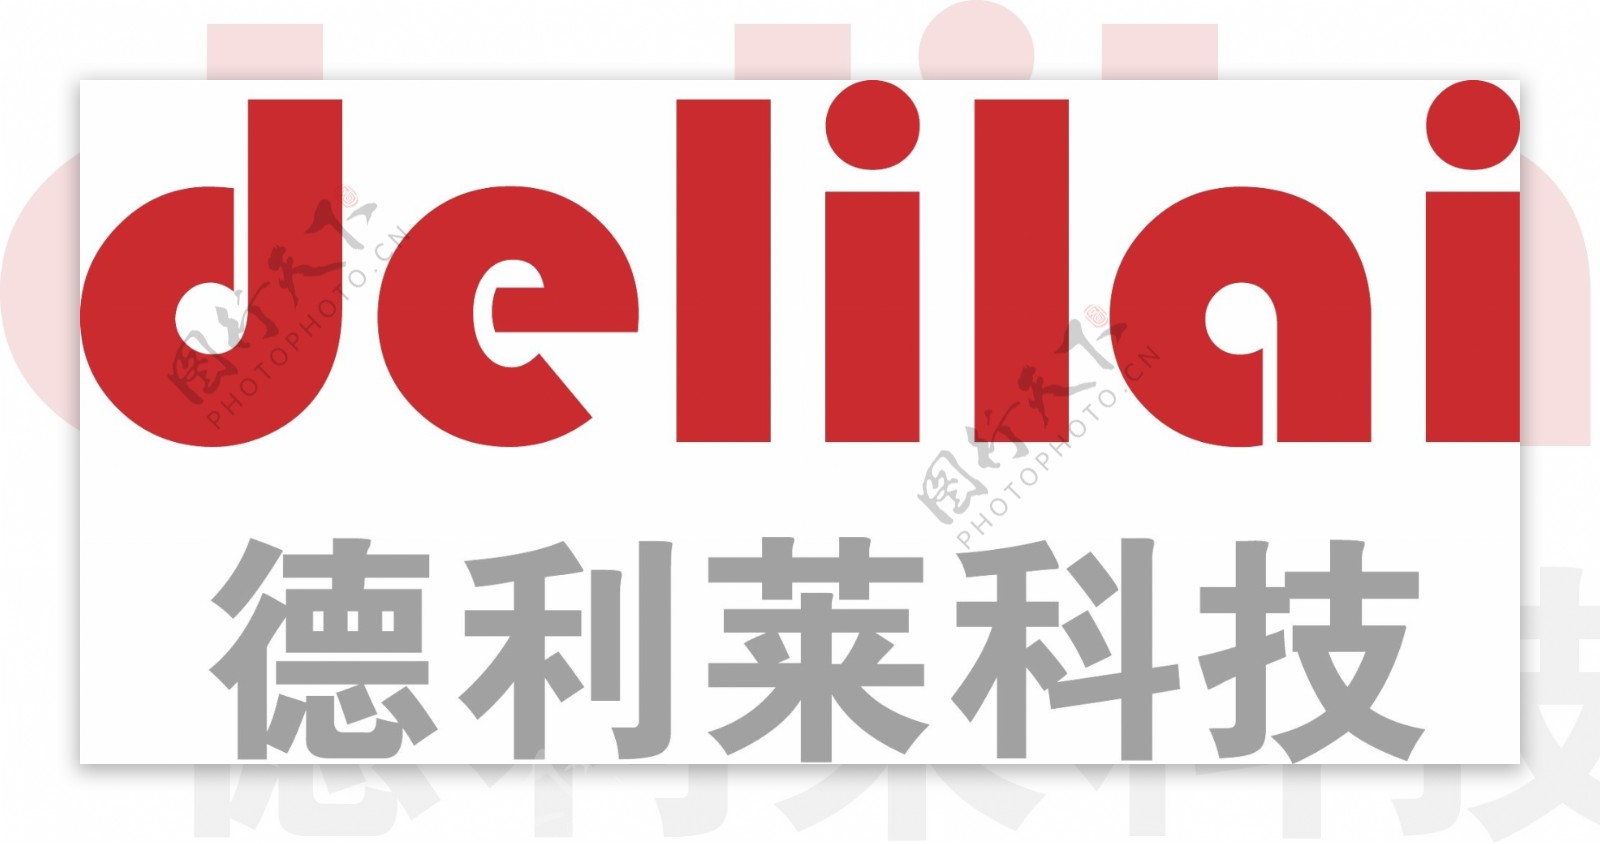 德利莱科技logo图片